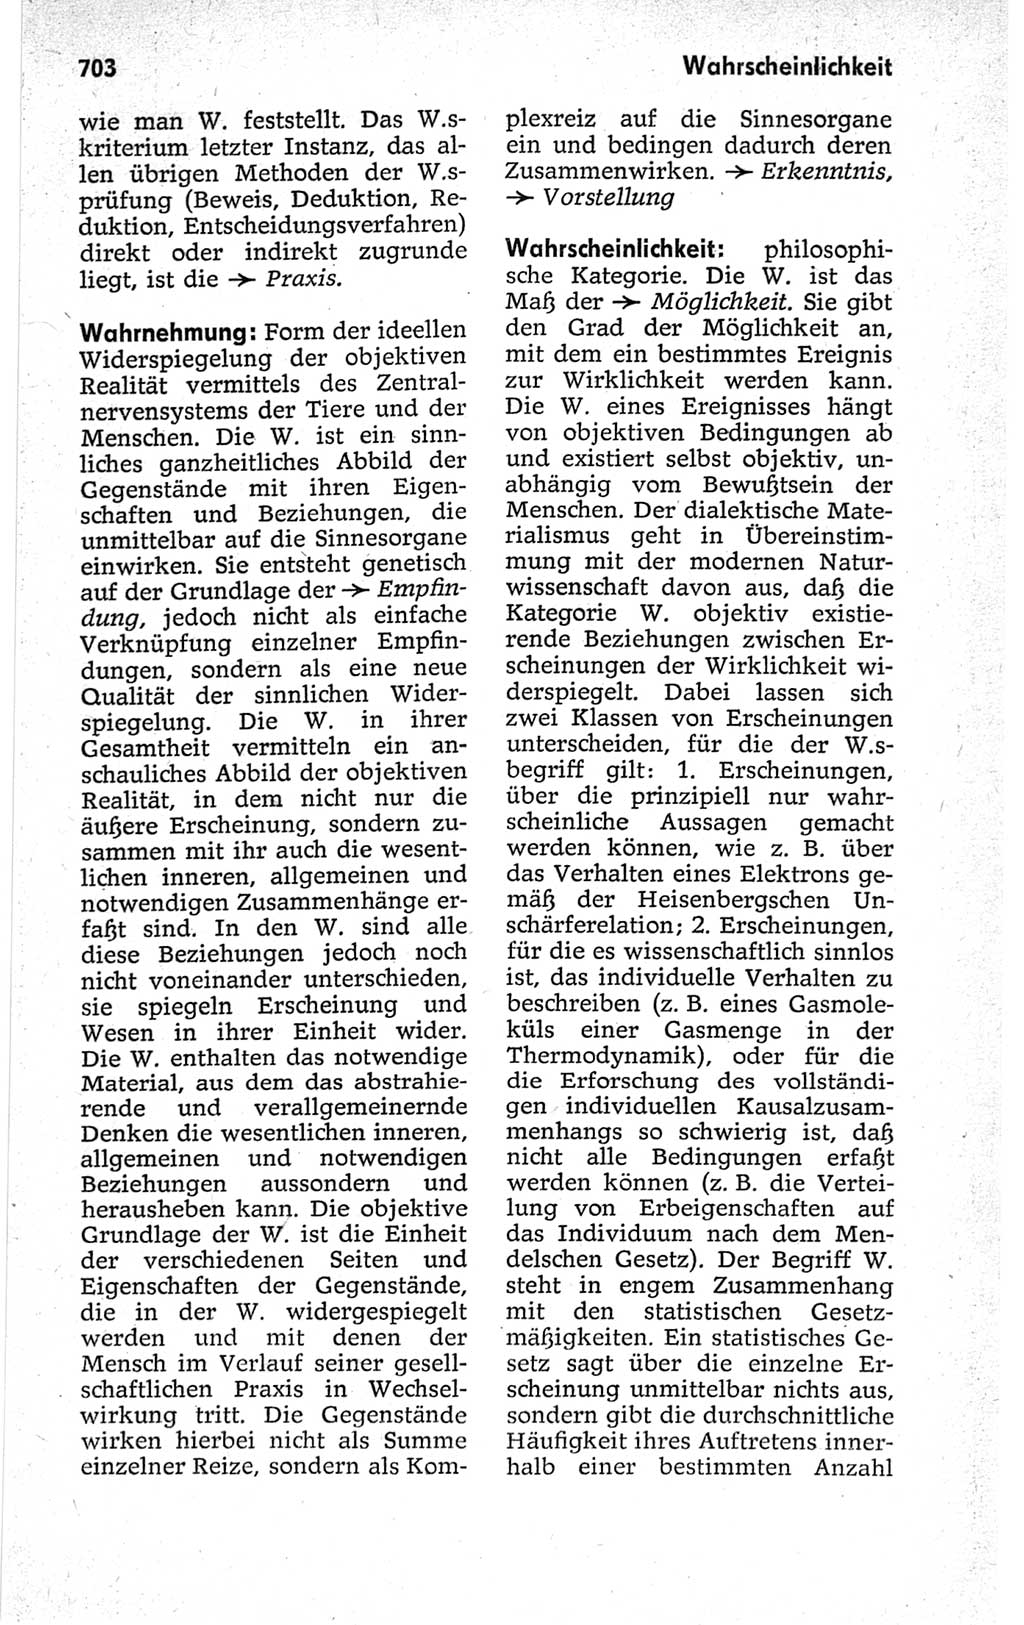 Kleines politisches Wörterbuch [Deutsche Demokratische Republik (DDR)] 1967, Seite 703 (Kl. pol. Wb. DDR 1967, S. 703)